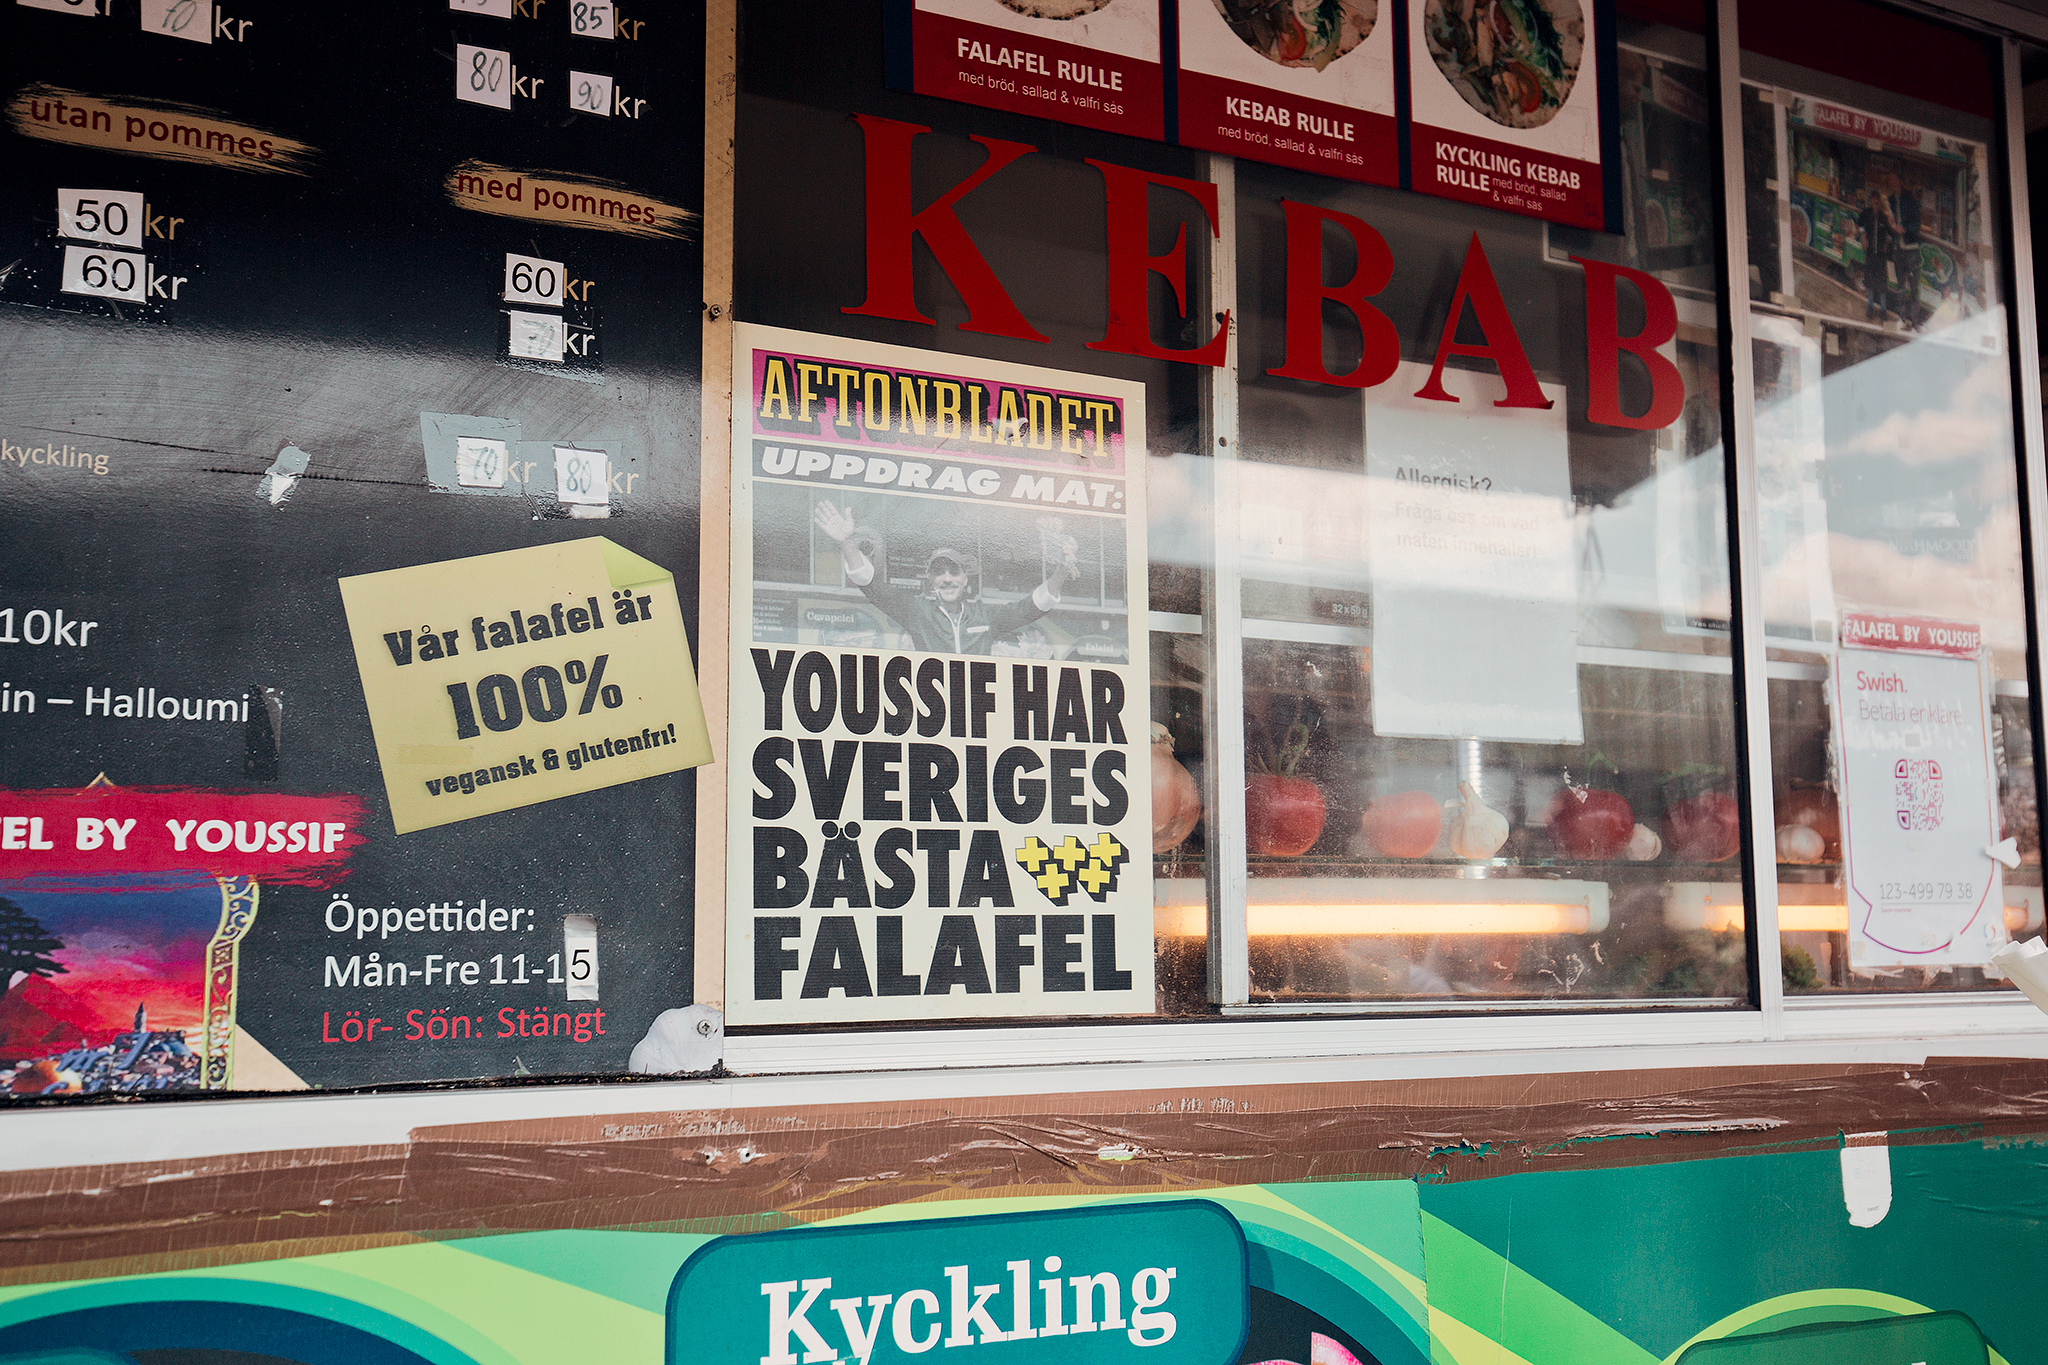 Sveriges bästa falafel - Falafel by Youssif